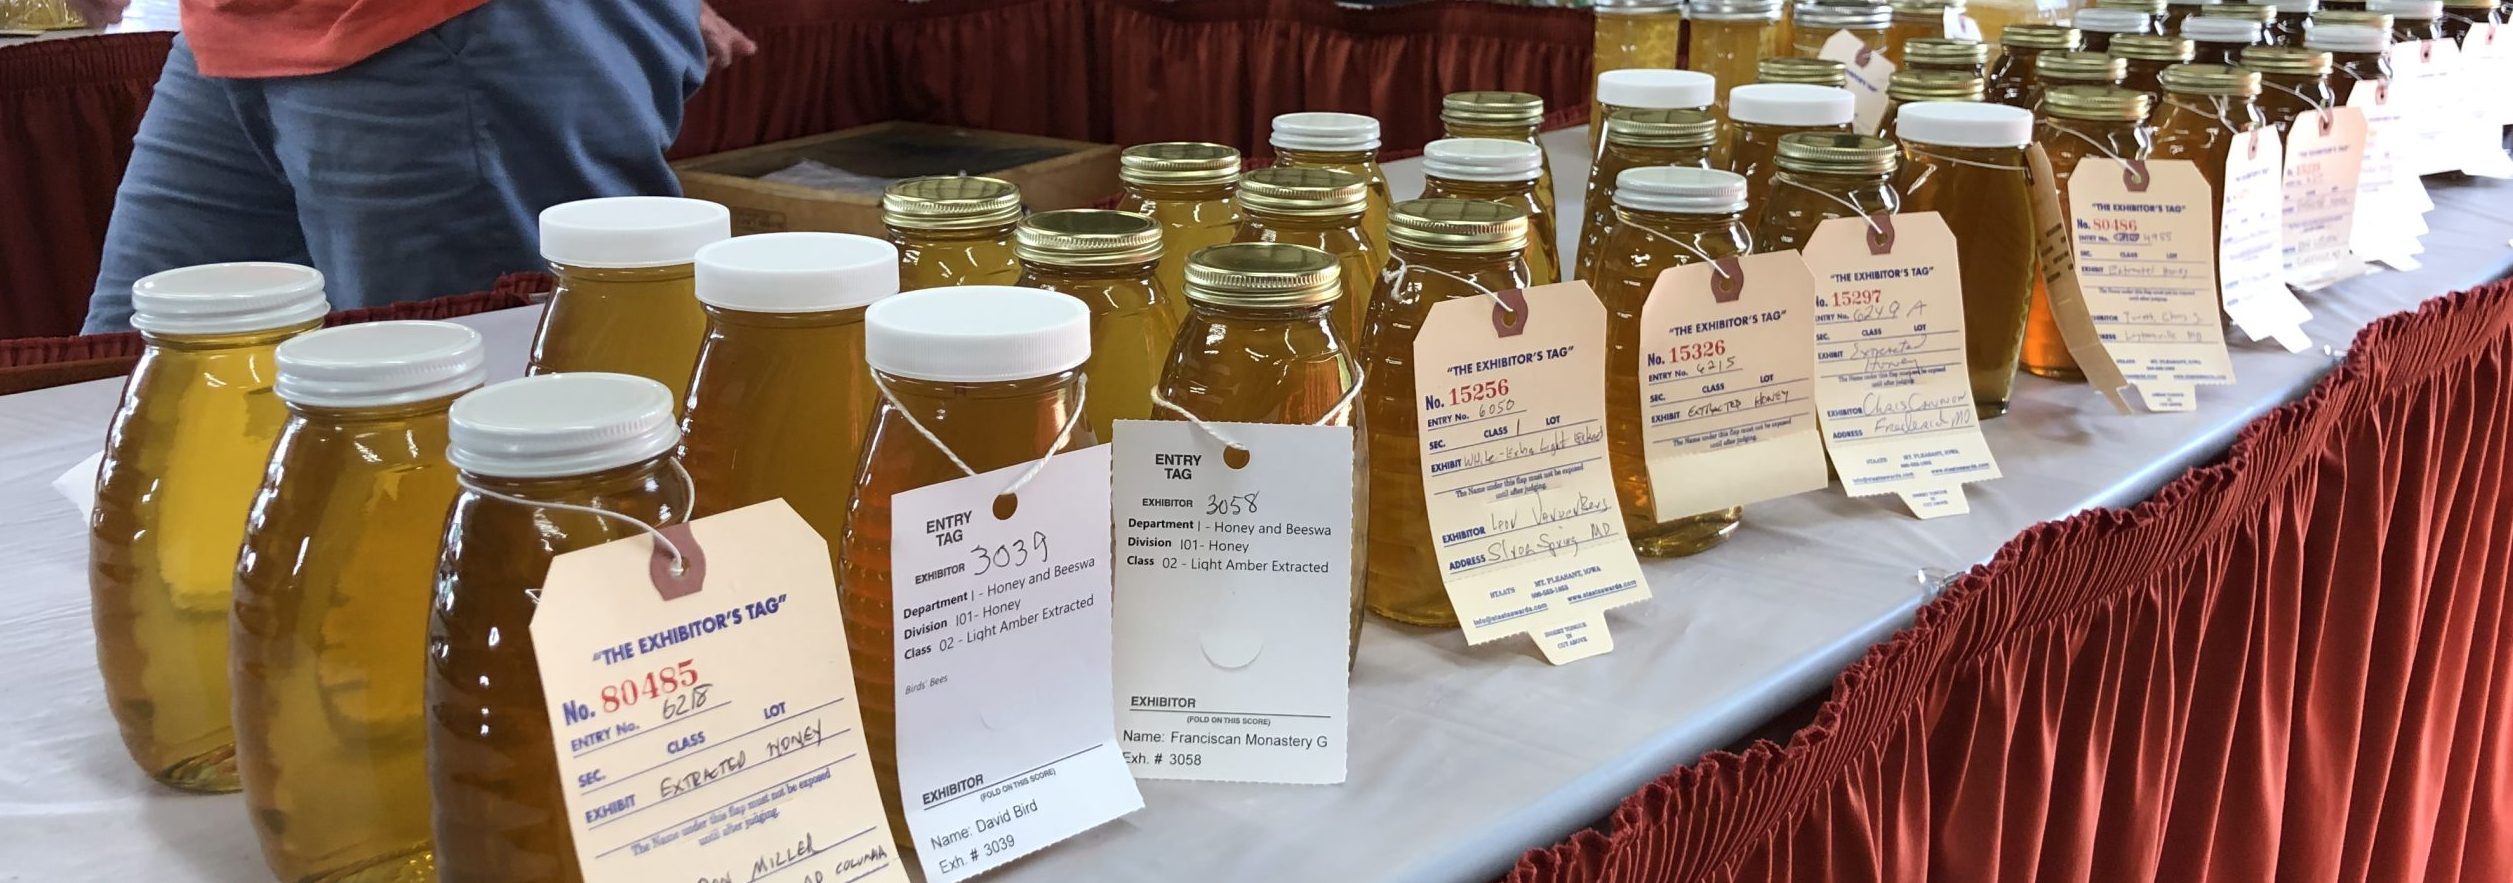 2019 Fair Ribbons for Honey